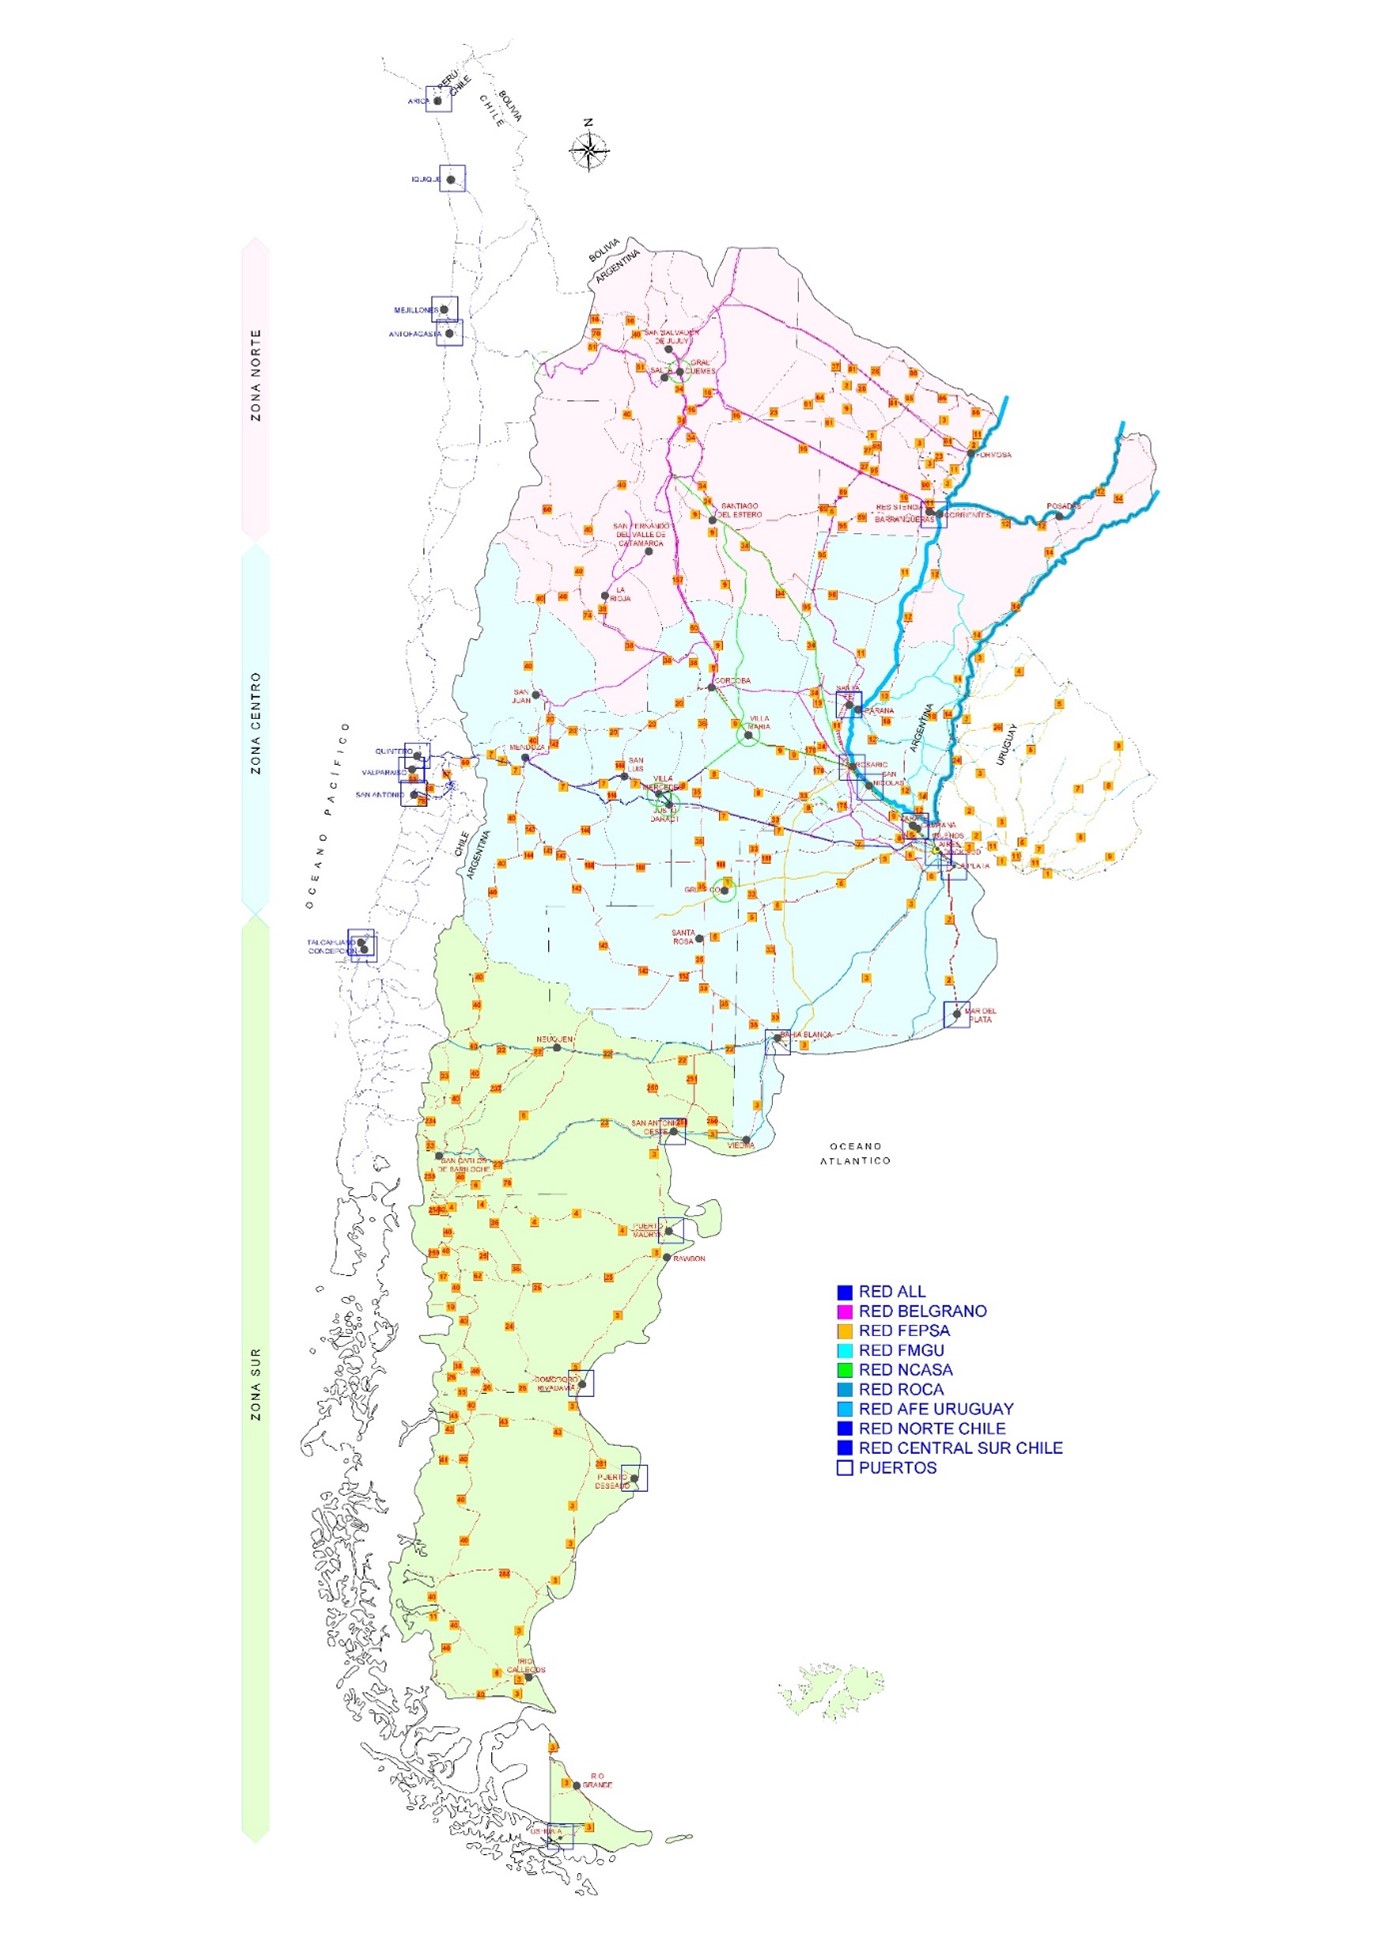 Plan Estratégico del Sistema Portuario Argentino. Para el Banco Mundial. Finalizado y Publicado